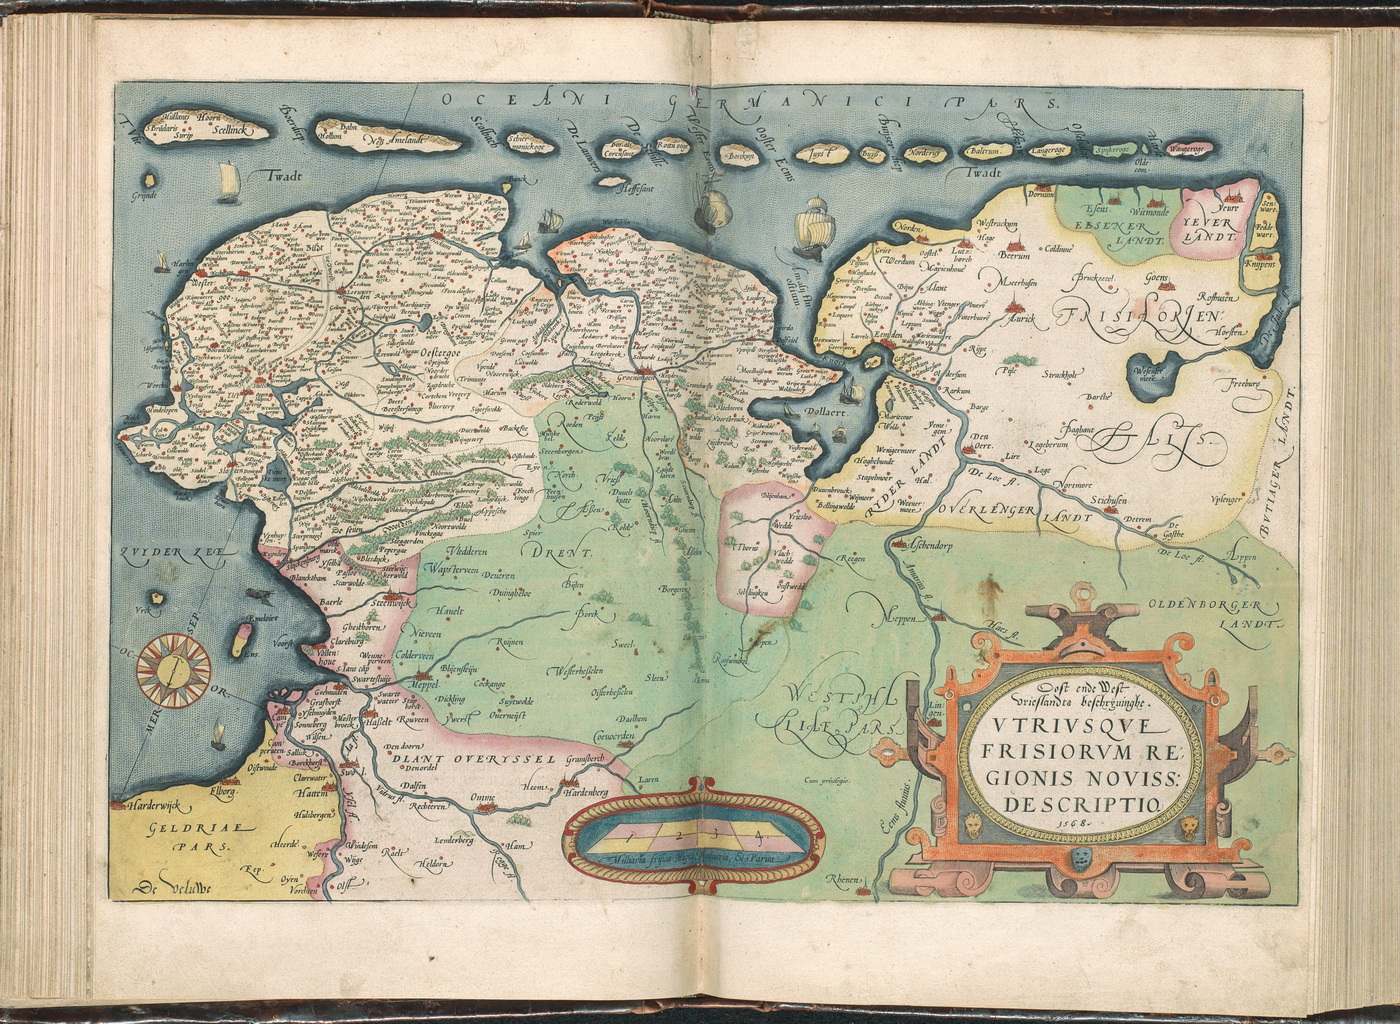 Plaat '036av-036br' uit de Atlas Ortelius van Abraham Ortelius (1527-1589). Oorspronkelijke druk is uit 1571, aanvullingen uit 1573, 1579 en 1584. Complete geschiedenis van dit werk. Op deze kaart wordt Noord-Oost Nederland getoond. De Atlas Ortelius is de eerste ‘moderne’ wereldatlas. Abraham Ortelius maakt zijn Theatrum orbis terrarum aan het eind van de zestiende eeuw in Antwerpen. Ortelius laat een aantal bestaande kaarten opnieuw tekenen in een standaardformaat en geeft ze uit als boek. Ook hier zien we de streek Westerwolde aangegeven, dit keer in de kleur roze. Licentie: Publiek Domein.